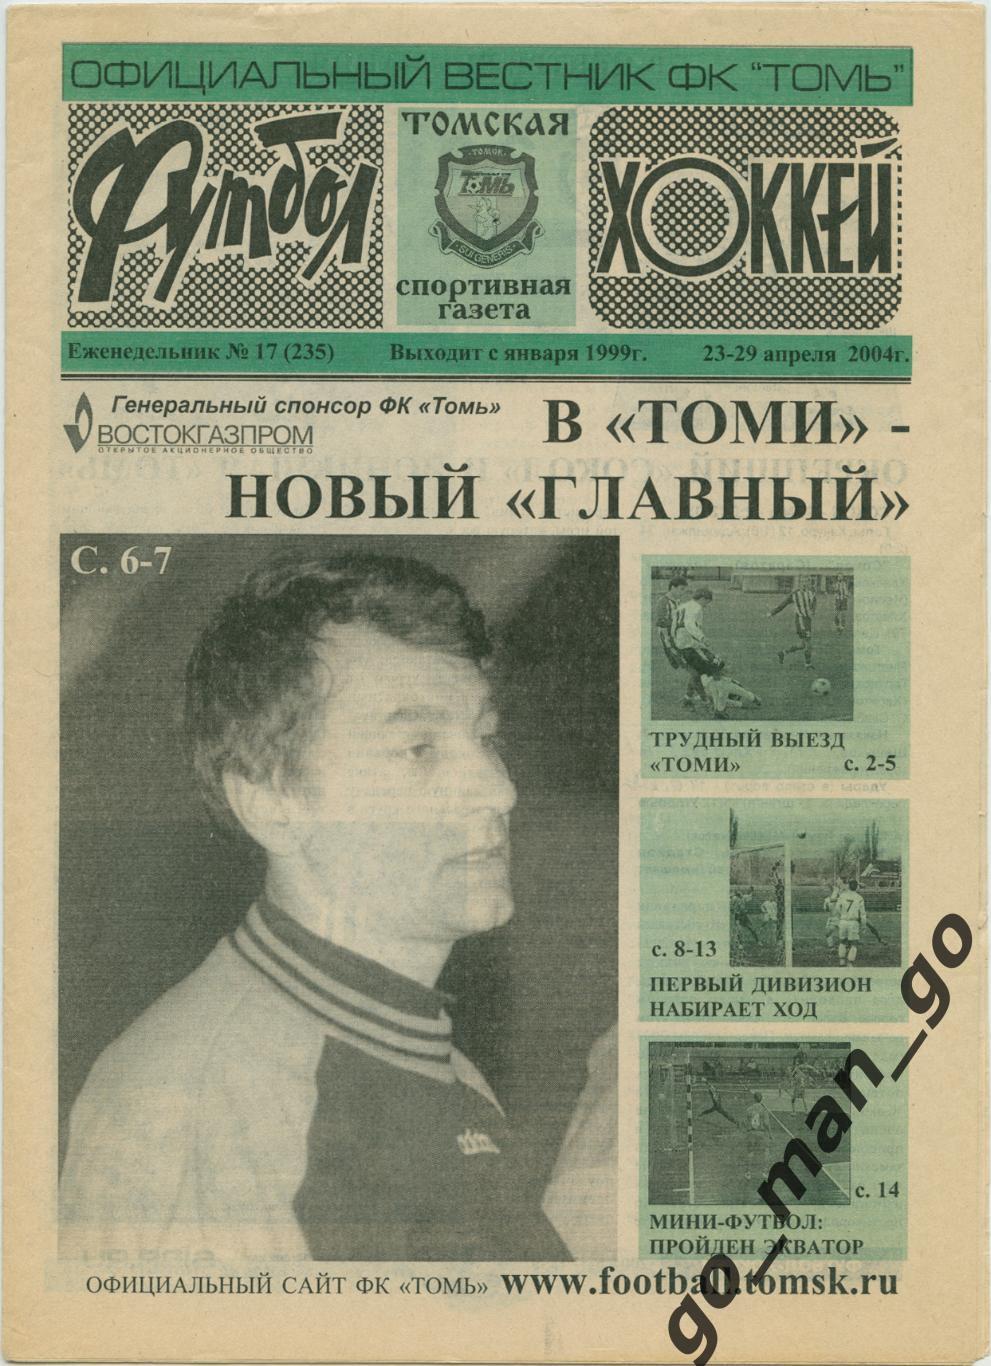 Еженедельник Футбол-Хоккей. Томская спортивная газета. 2004, № 17.